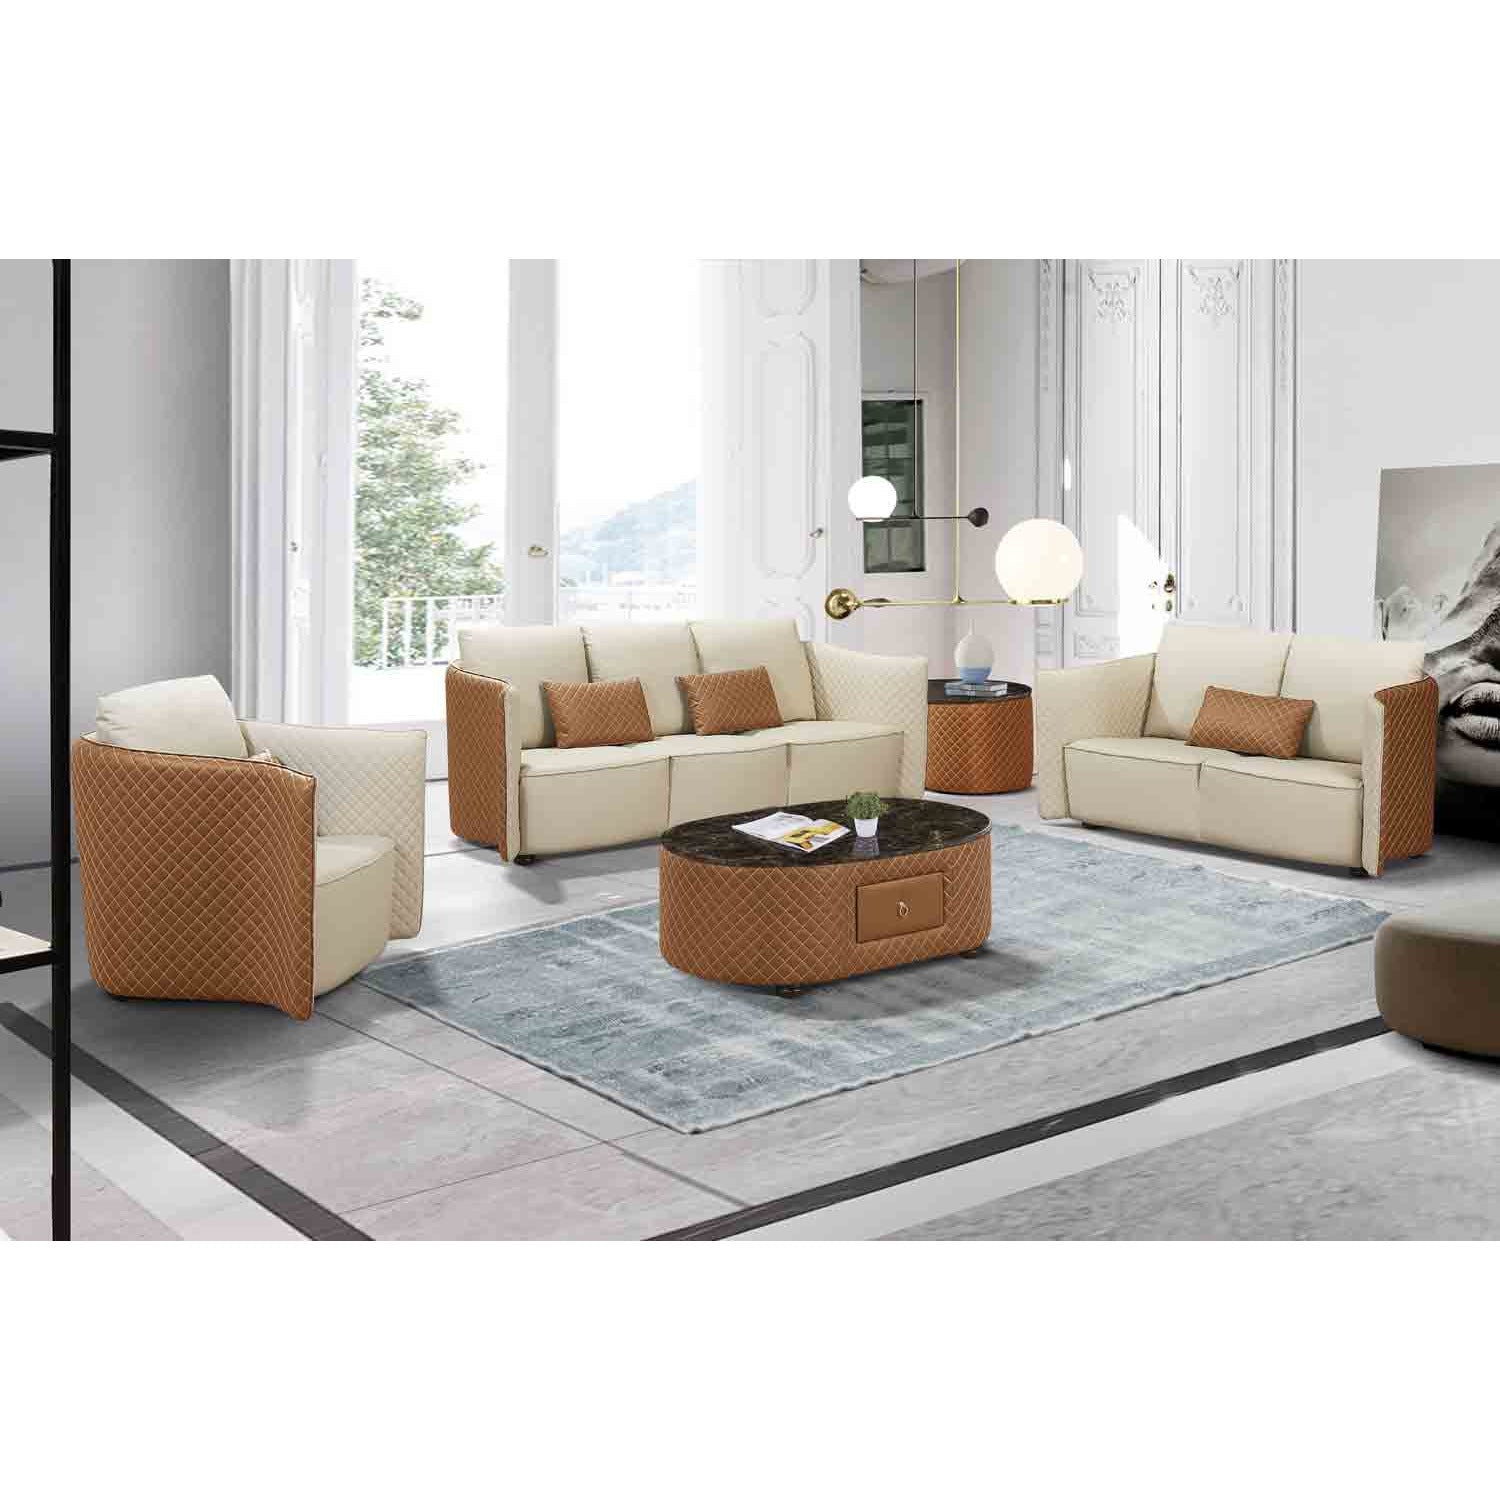 European Furniture - Makassar End Table in Sand Beige & Orange - 52552-ET - New Star Living